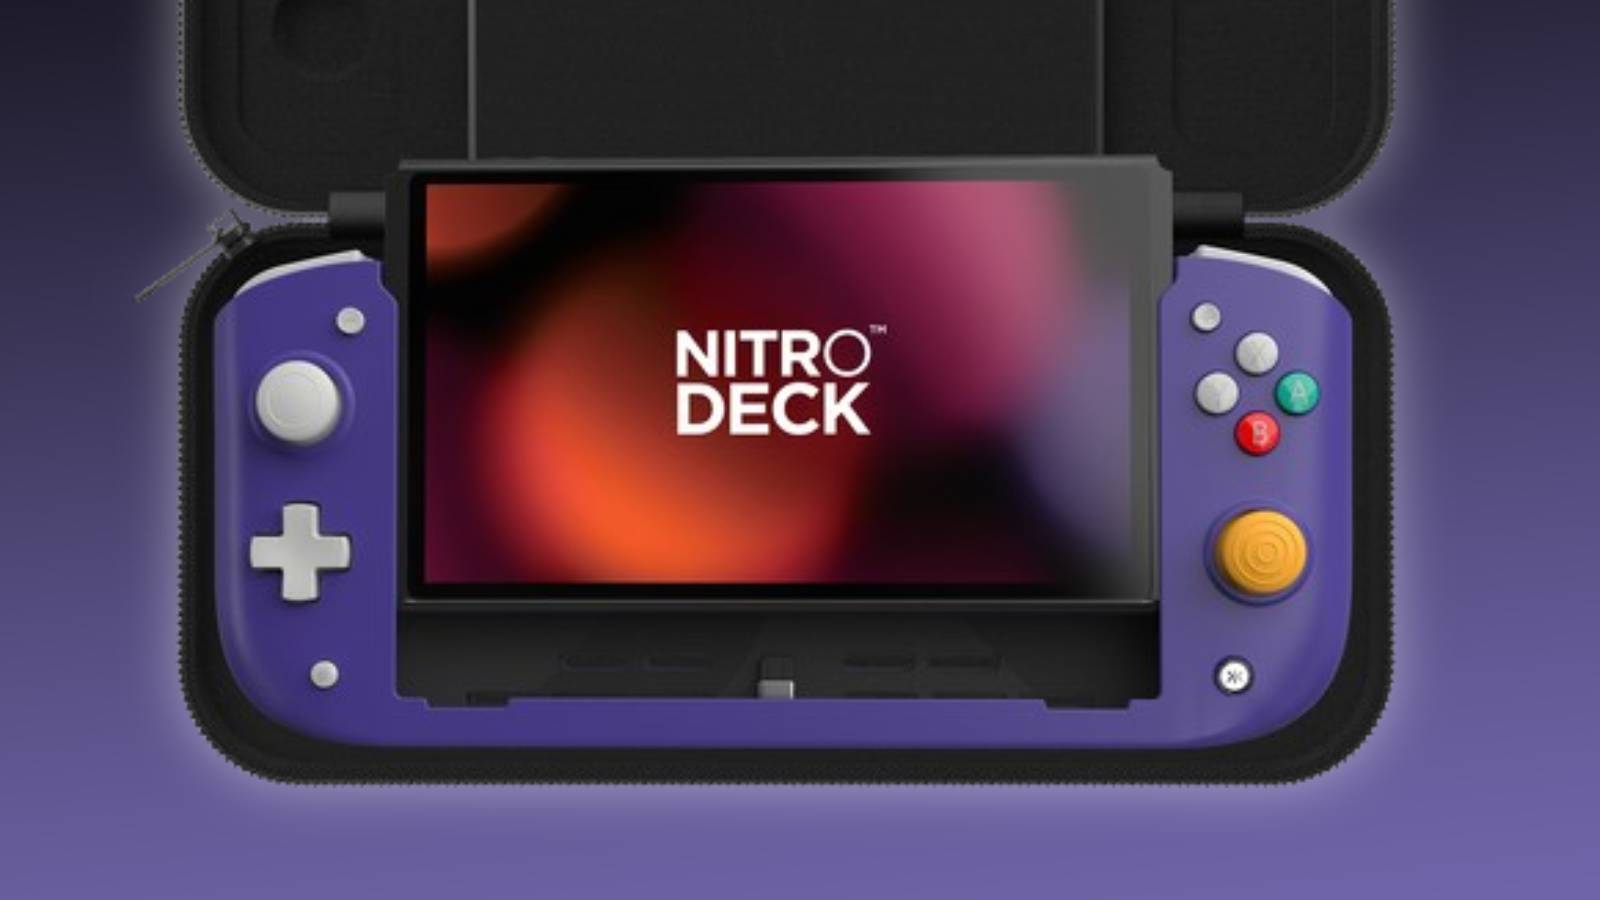 Image of the CRKD Nitro Deck in 'Retro Purple'.